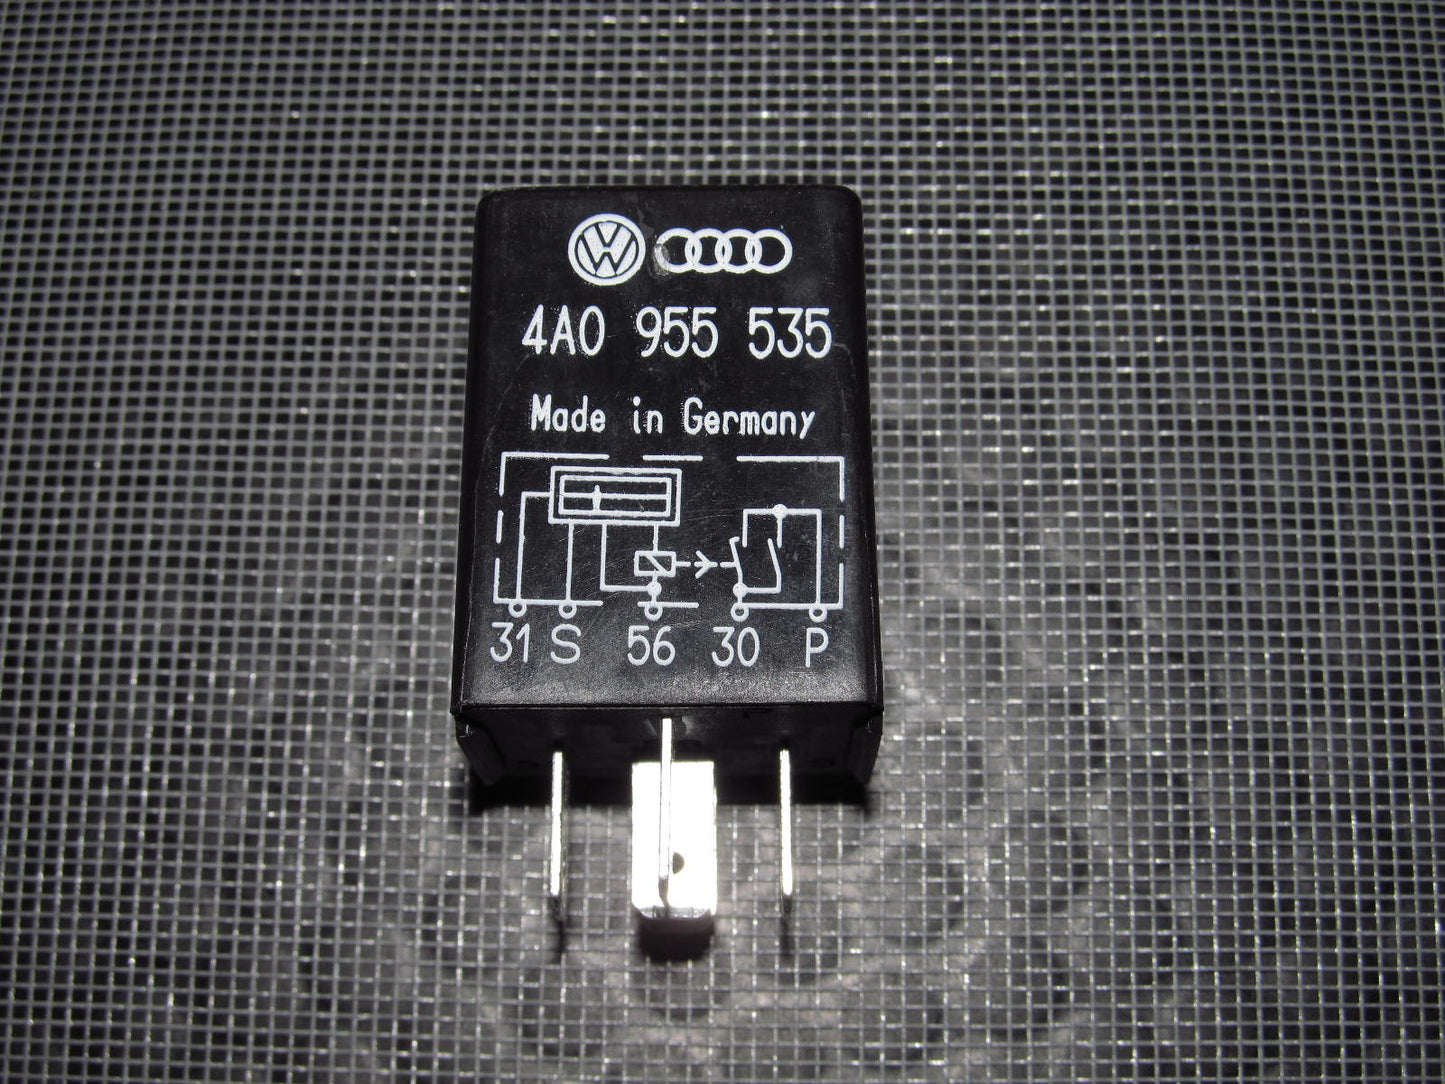 Audi & Volkswagen Universal Relay 4A0 955 535